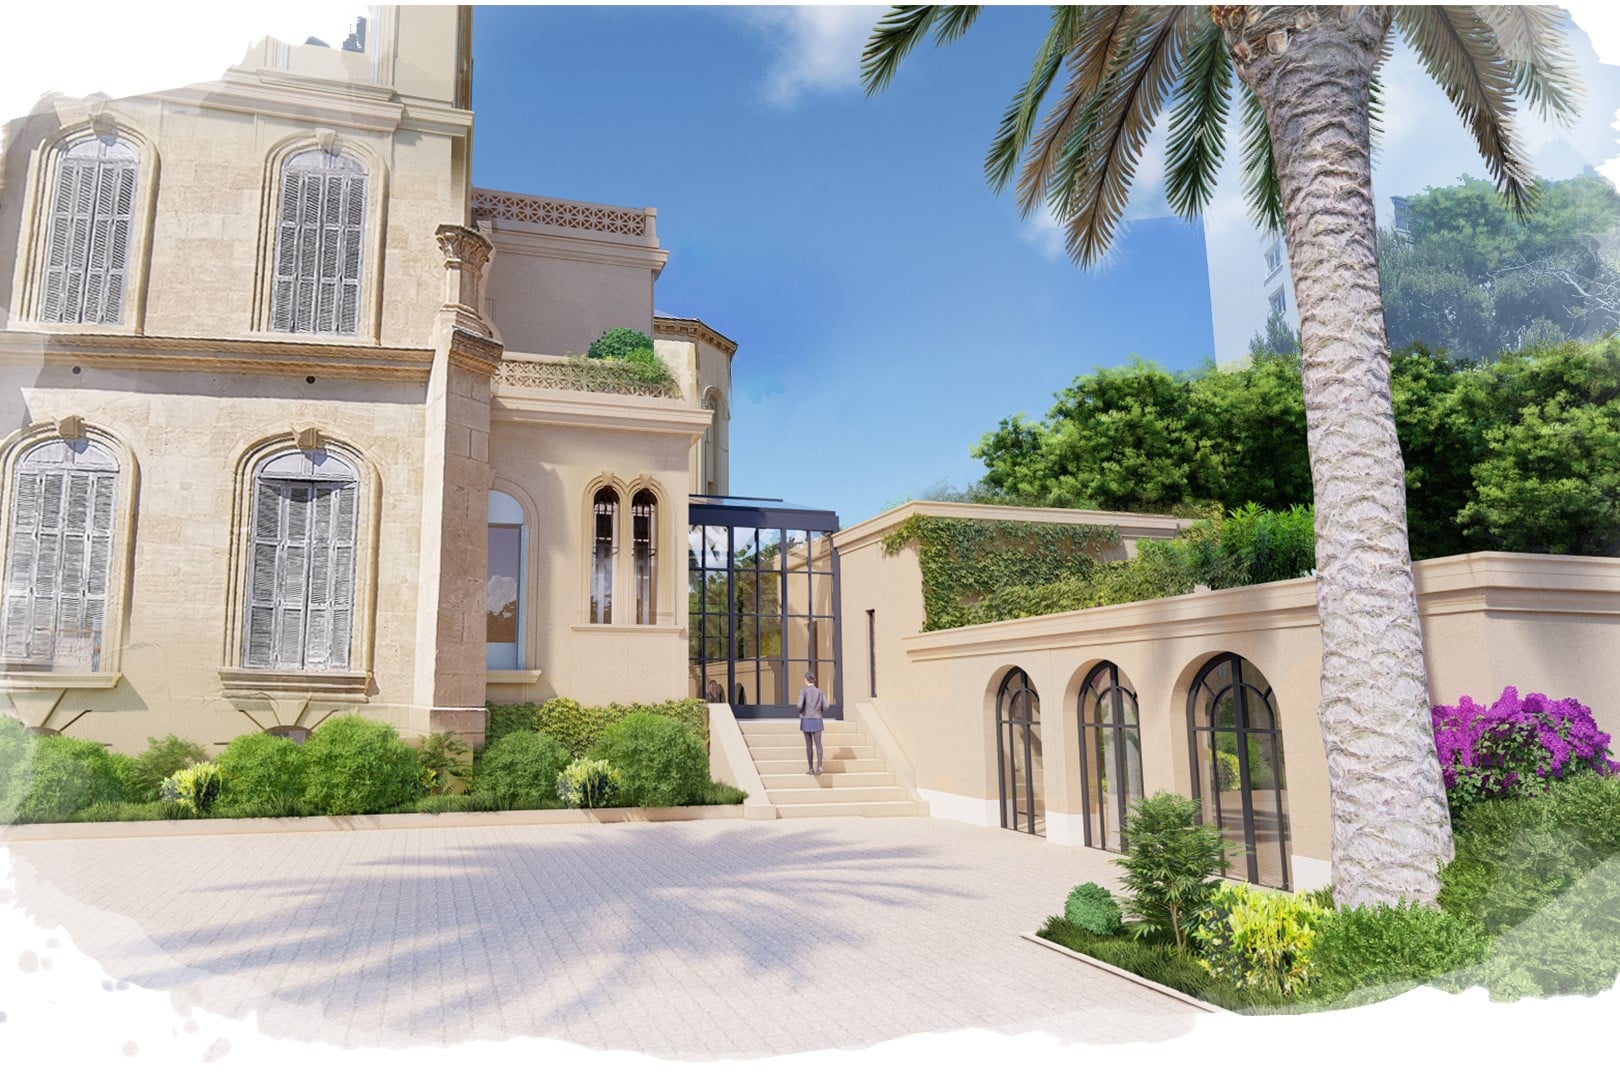 , Villa Valmer : la Ville et l&rsquo;État face à l&rsquo;hôtelier au tribunal, Made in Marseille